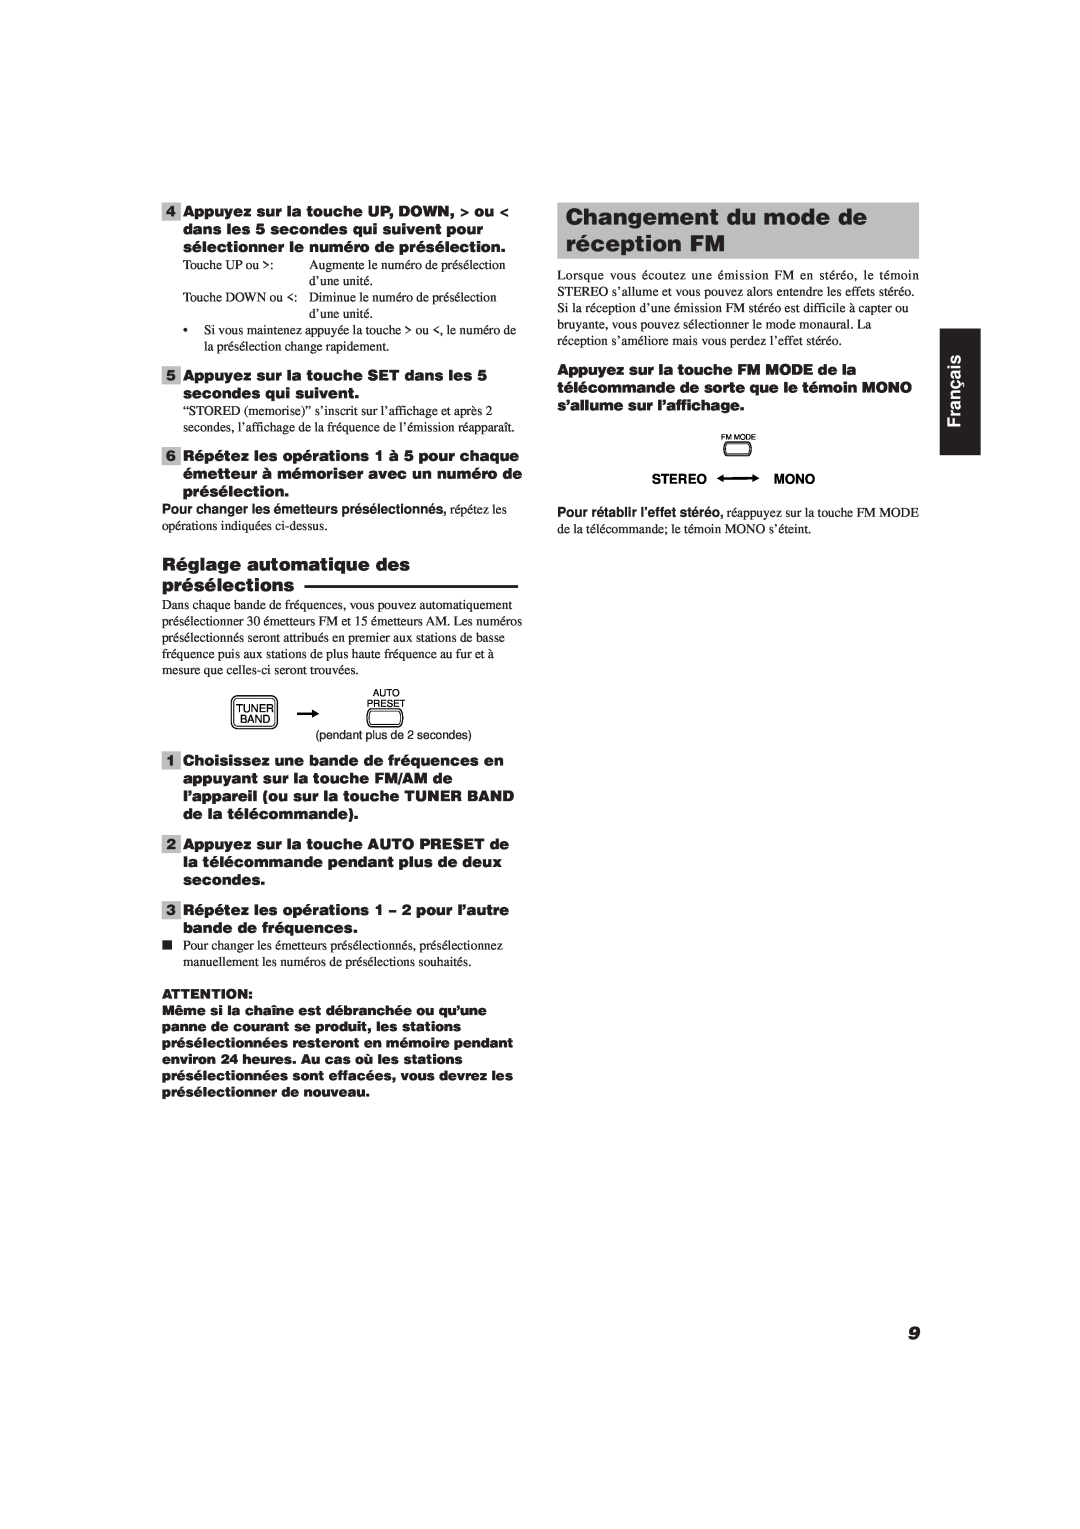 JVC FS-V30 manual Changement du mode de réception FM, Français 